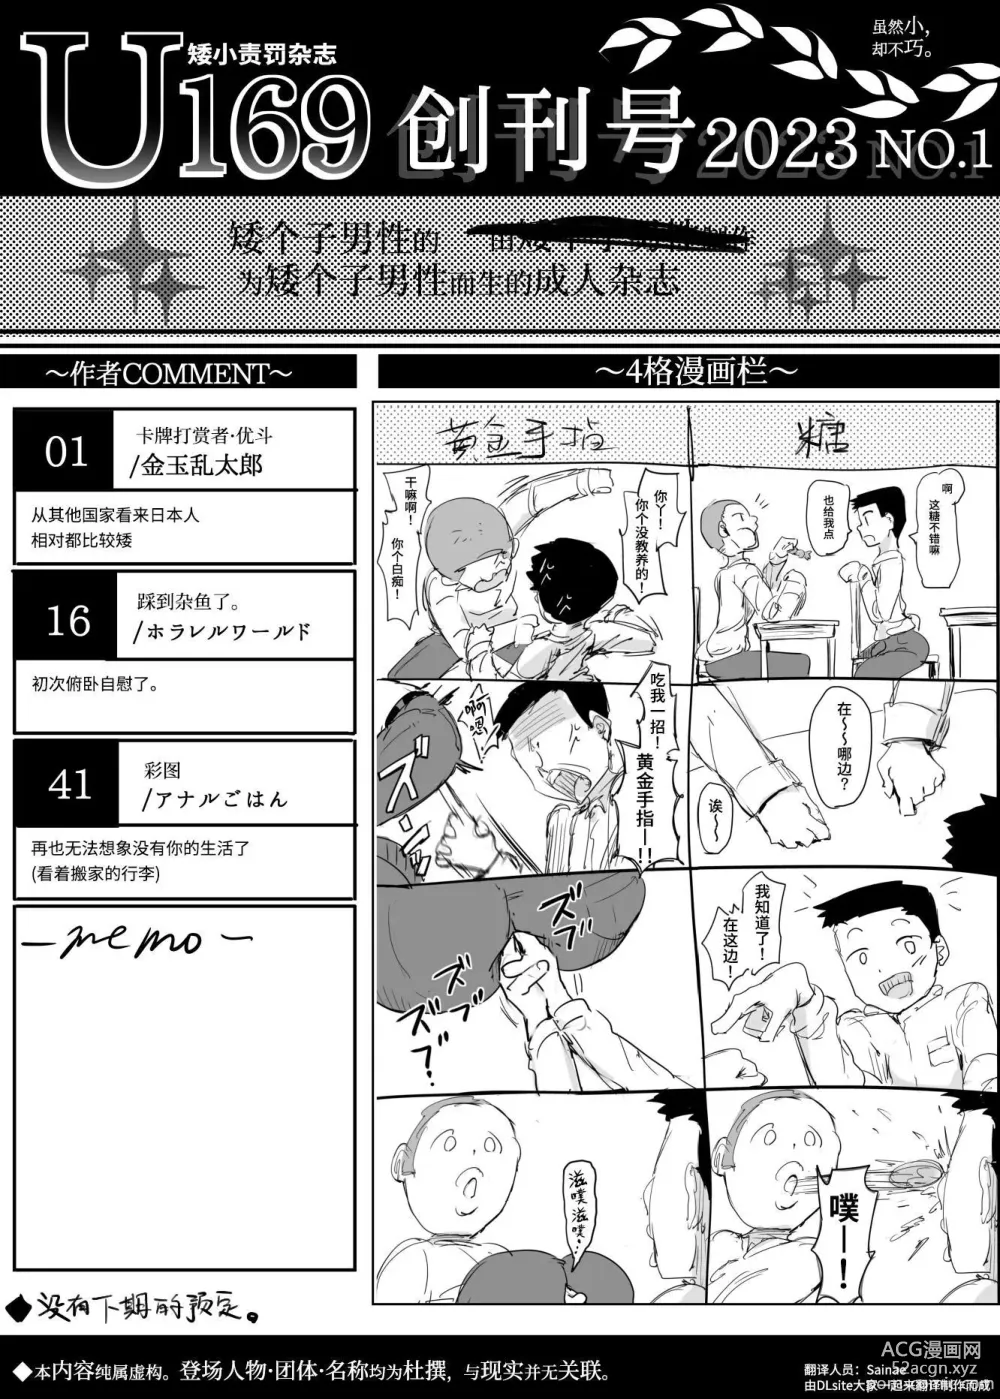 Page 50 of doujinshi U169